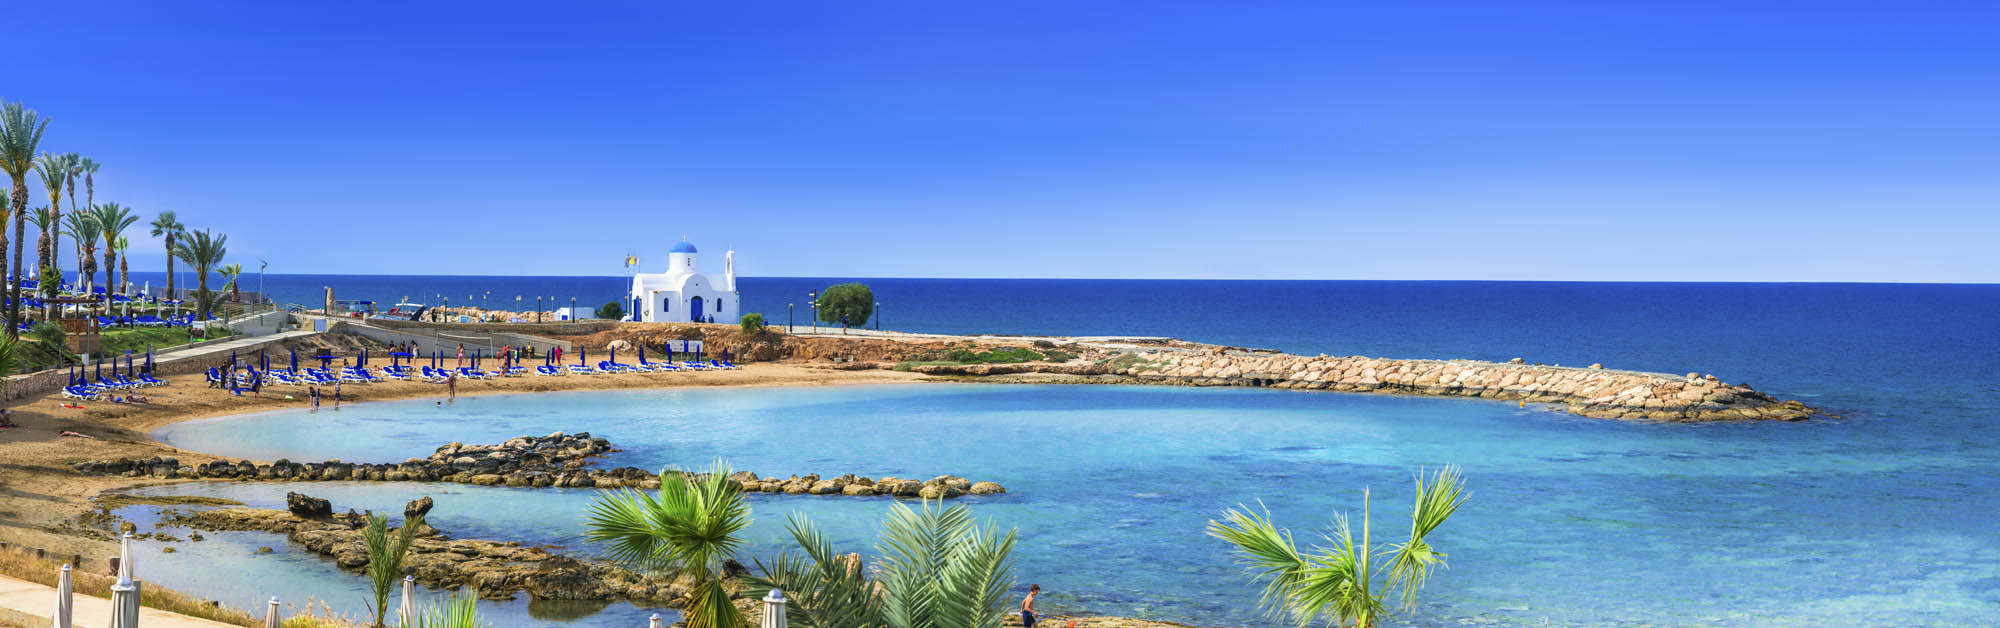 Piękny widok na morze i na całe wybrzeże cypryjskie, panorama